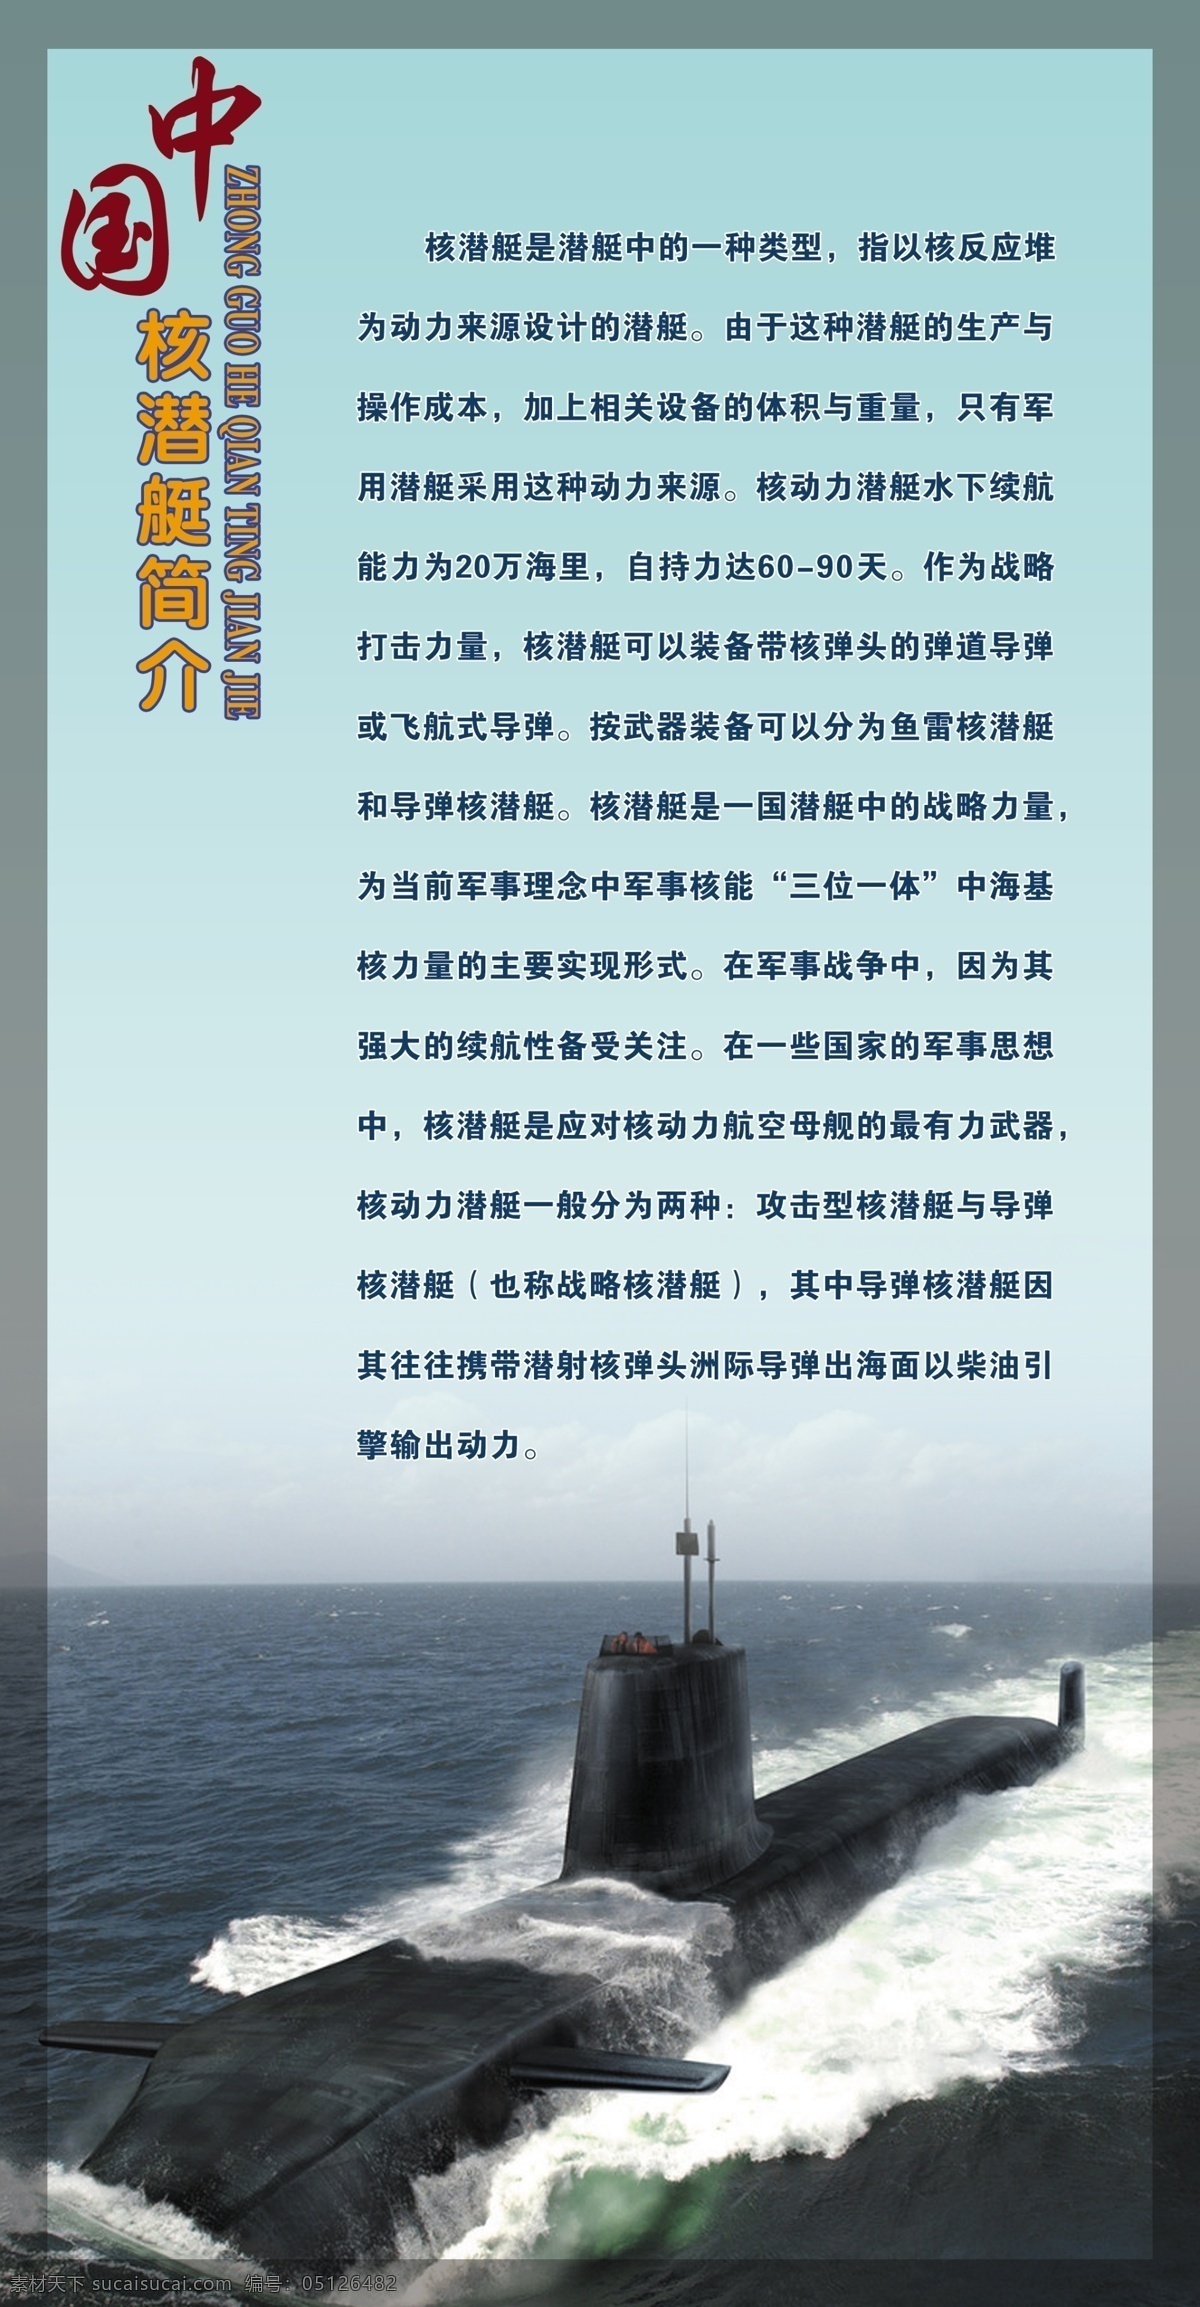 广告设计模板 国防 国防教育 国防教育展板 军事 科技 潜艇 源文件 展板 模板下载 中国核潜艇 中国海上部队 潜艇简介 潜艇介绍 展板模板 其他展板设计